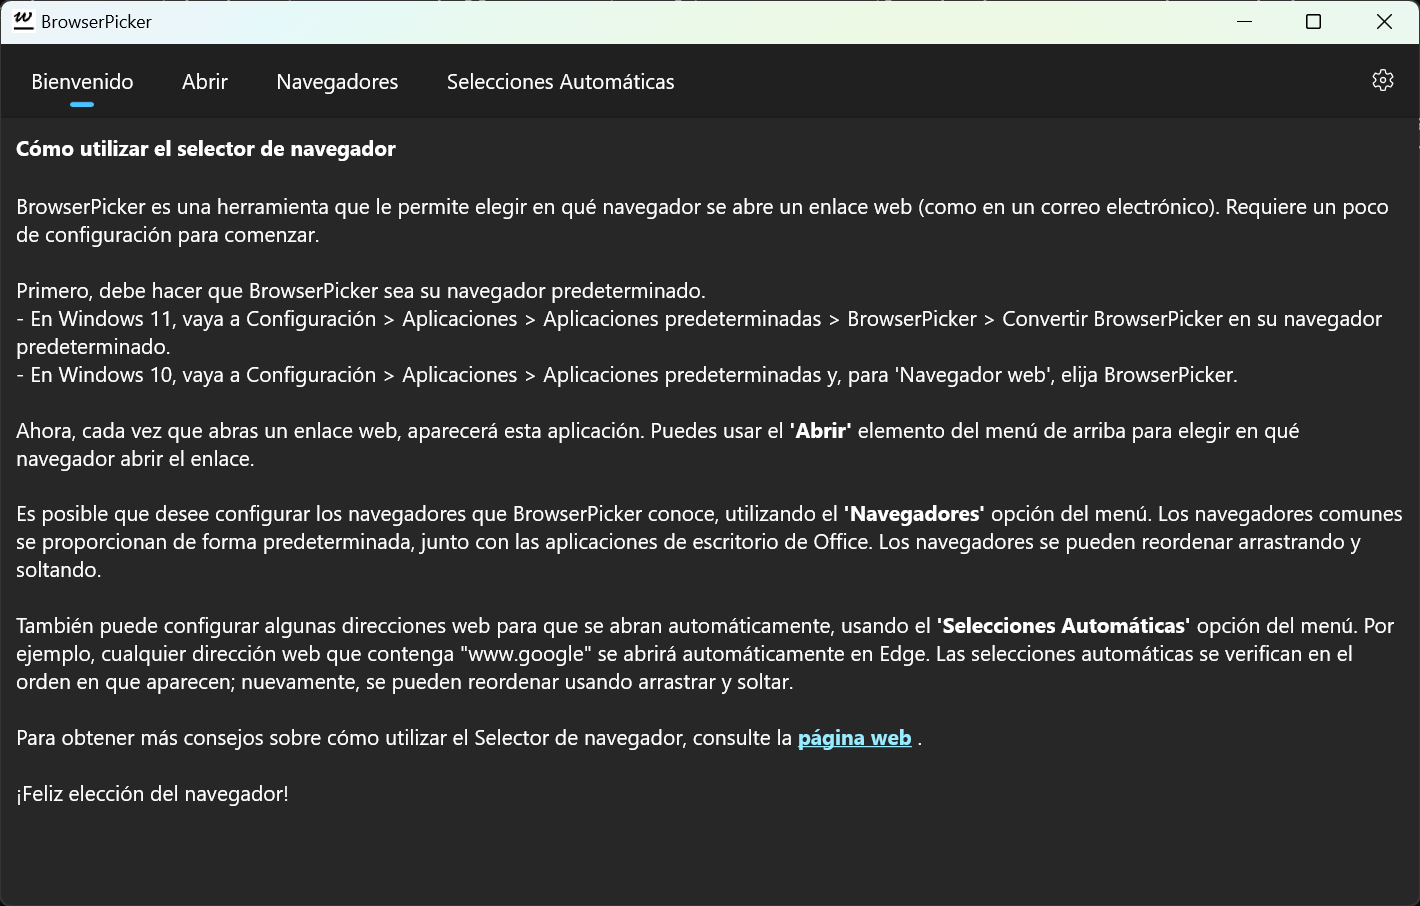 BrowserPicker: página de Bienvenida, con instrucciones básicas de uso (modo oscuro).